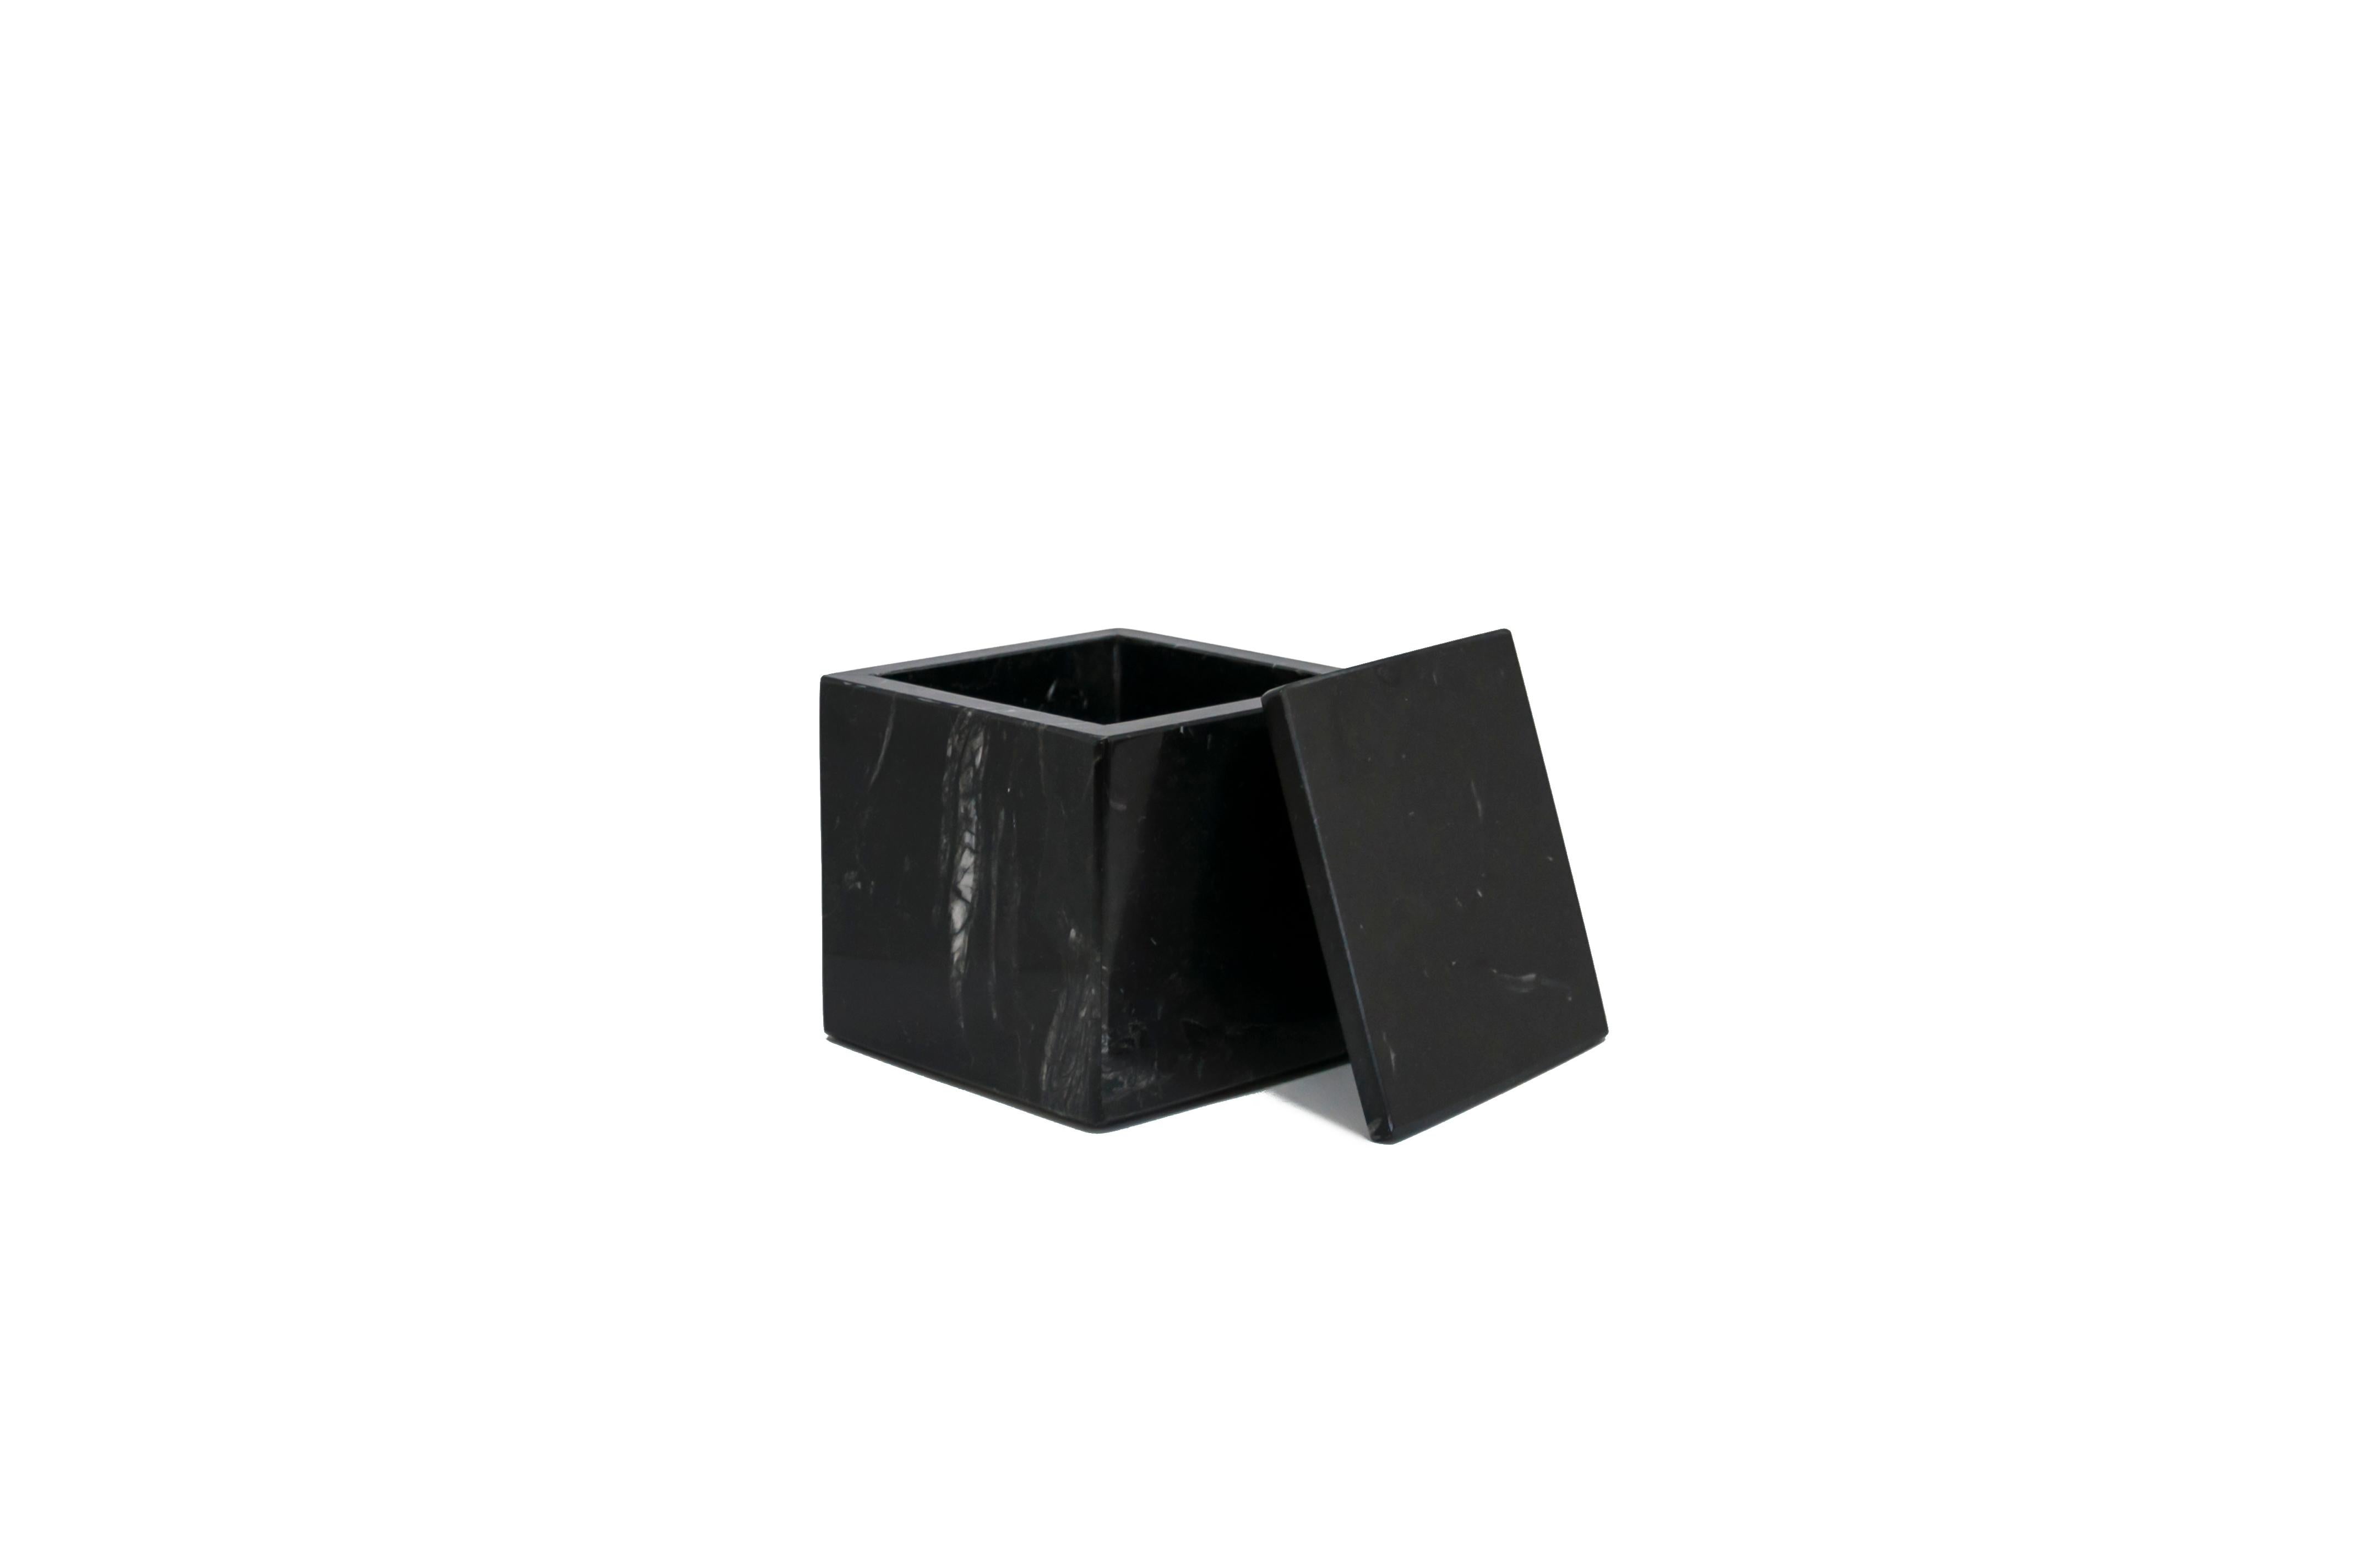 Quadratische Schachtel aus schwarzem Marquina-Marmor mit Deckel.
Jedes Stück ist in gewisser Weise einzigartig (da jeder Marmorblock unterschiedliche Maserungen und Schattierungen aufweist) und wird in Italien handgefertigt. Geringfügige